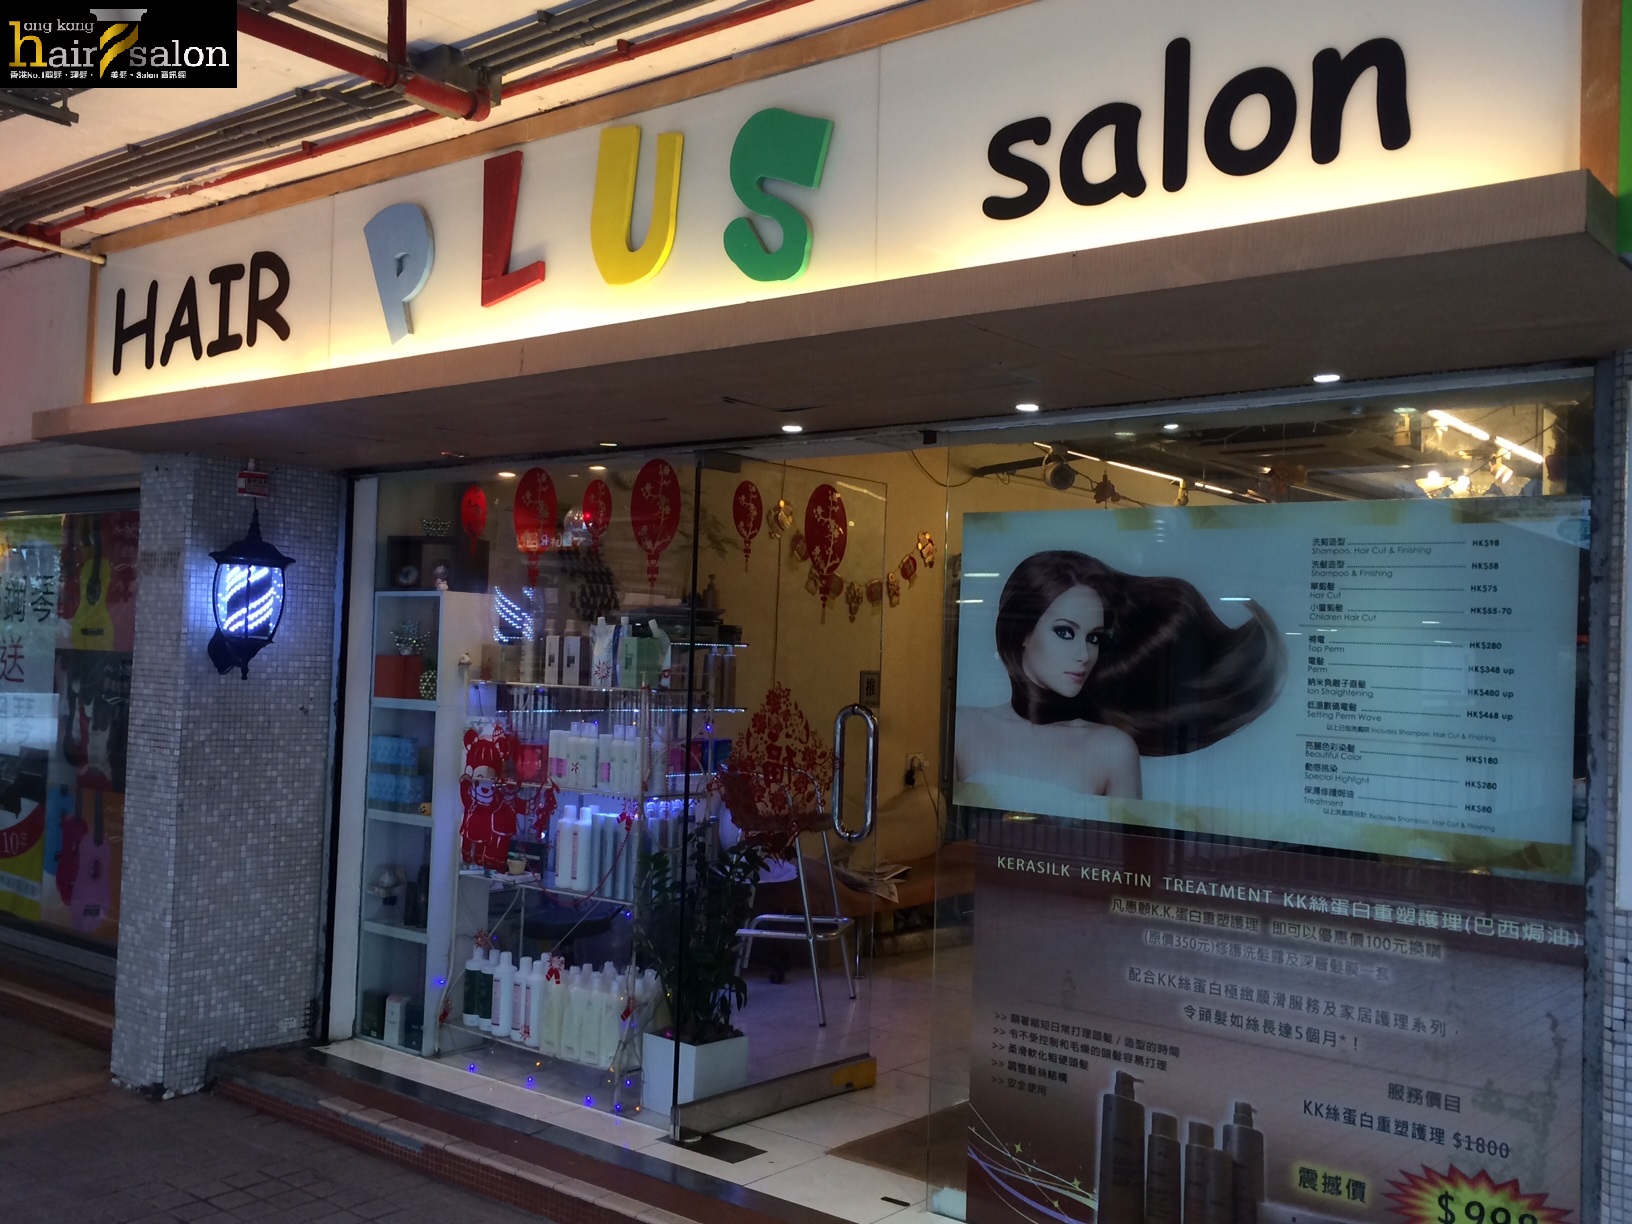 Hair Colouring: Hair Plus Salon